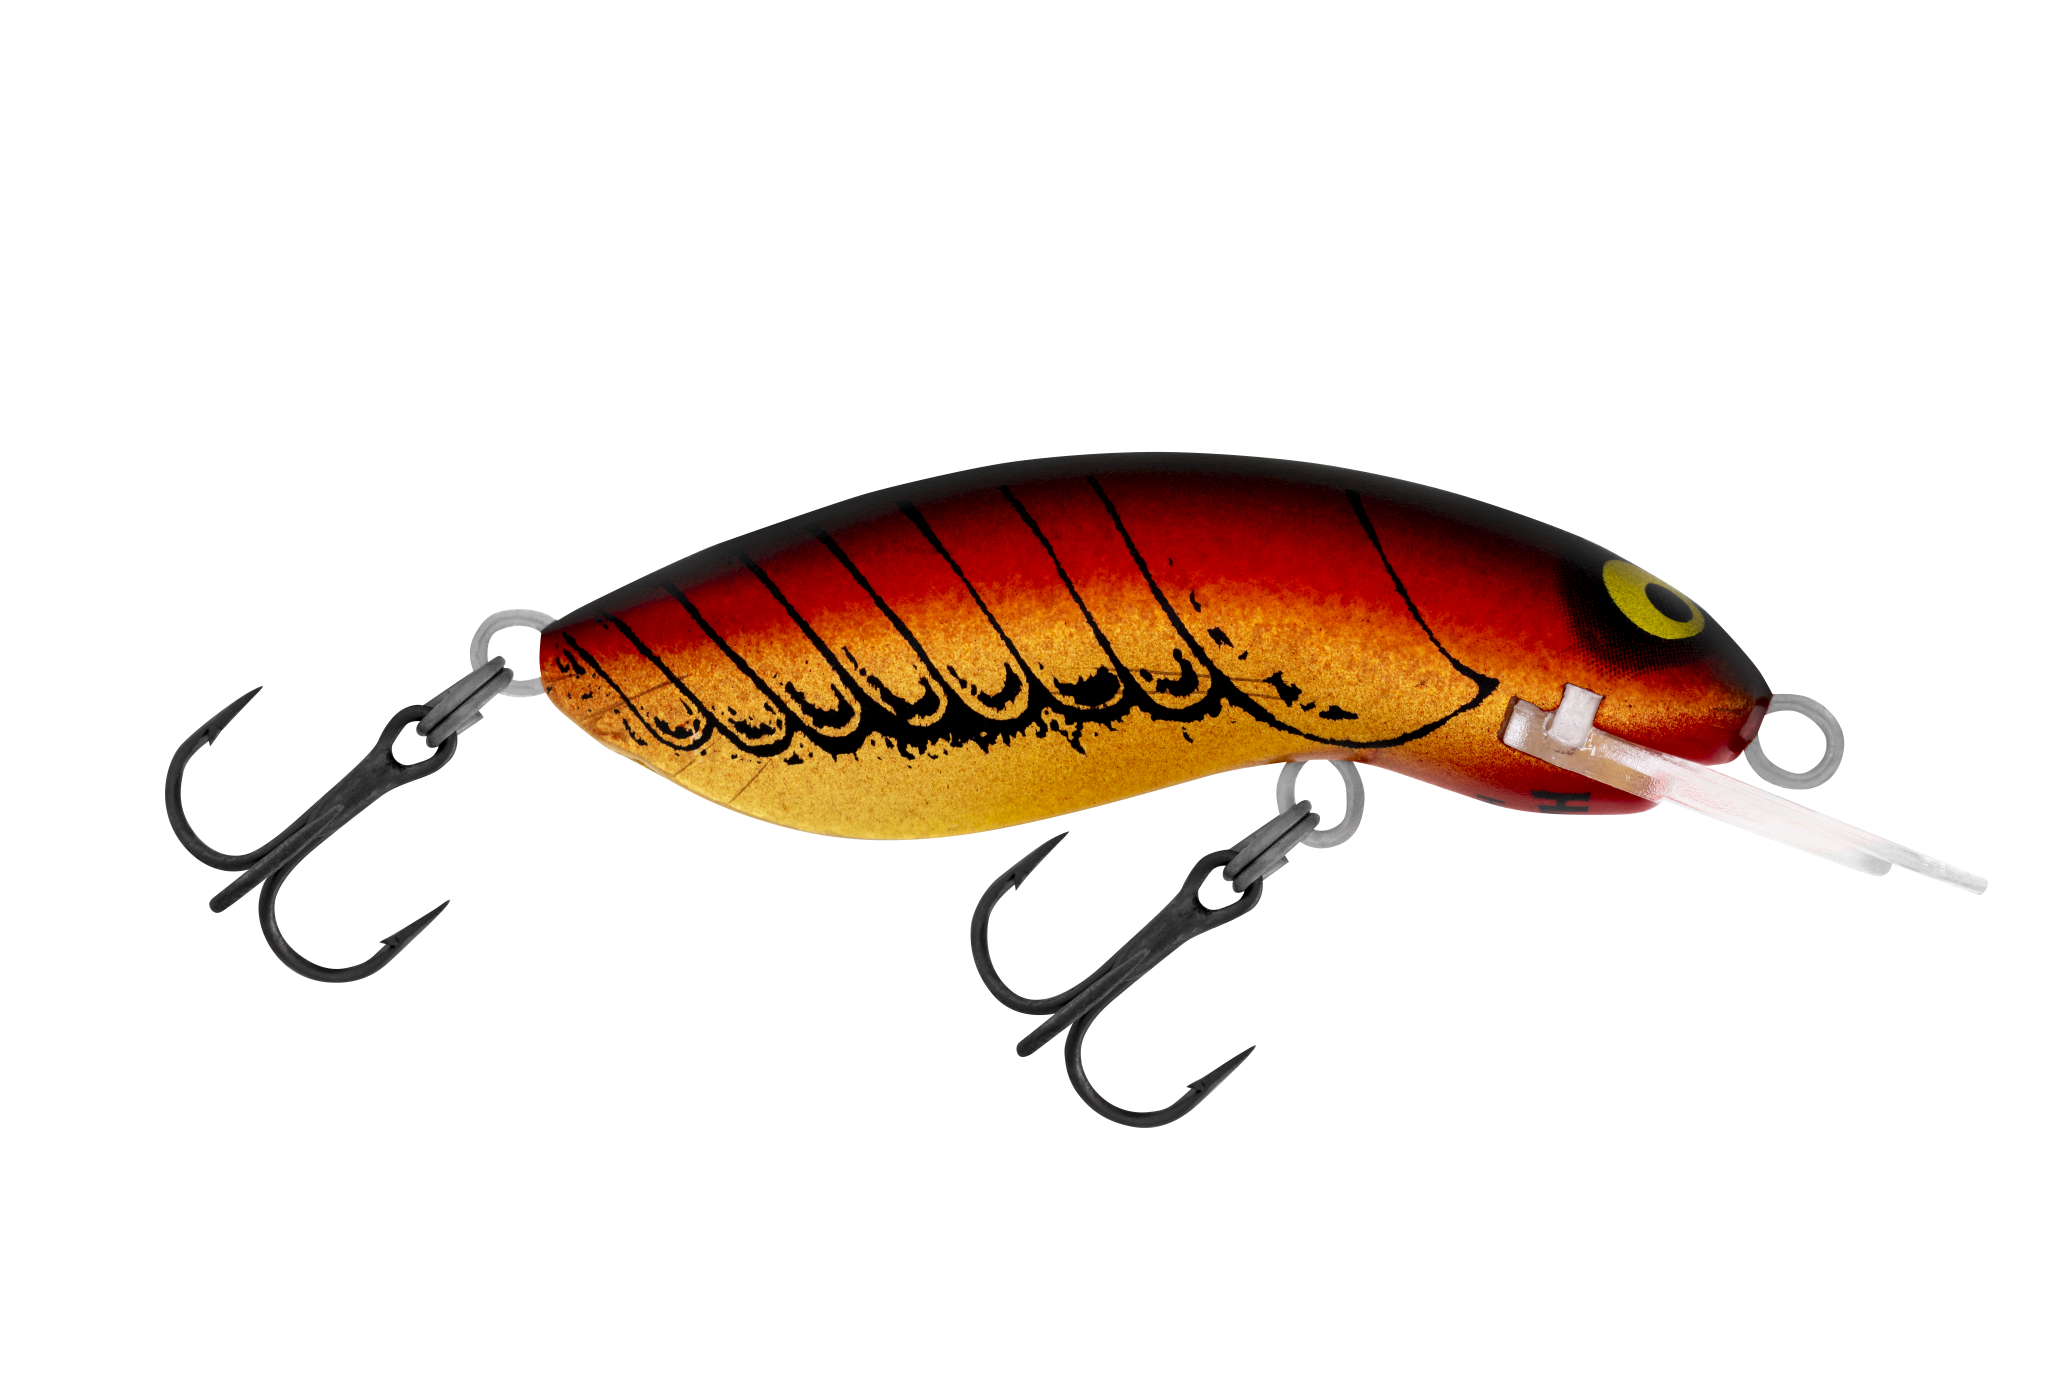 H61 Crawfish